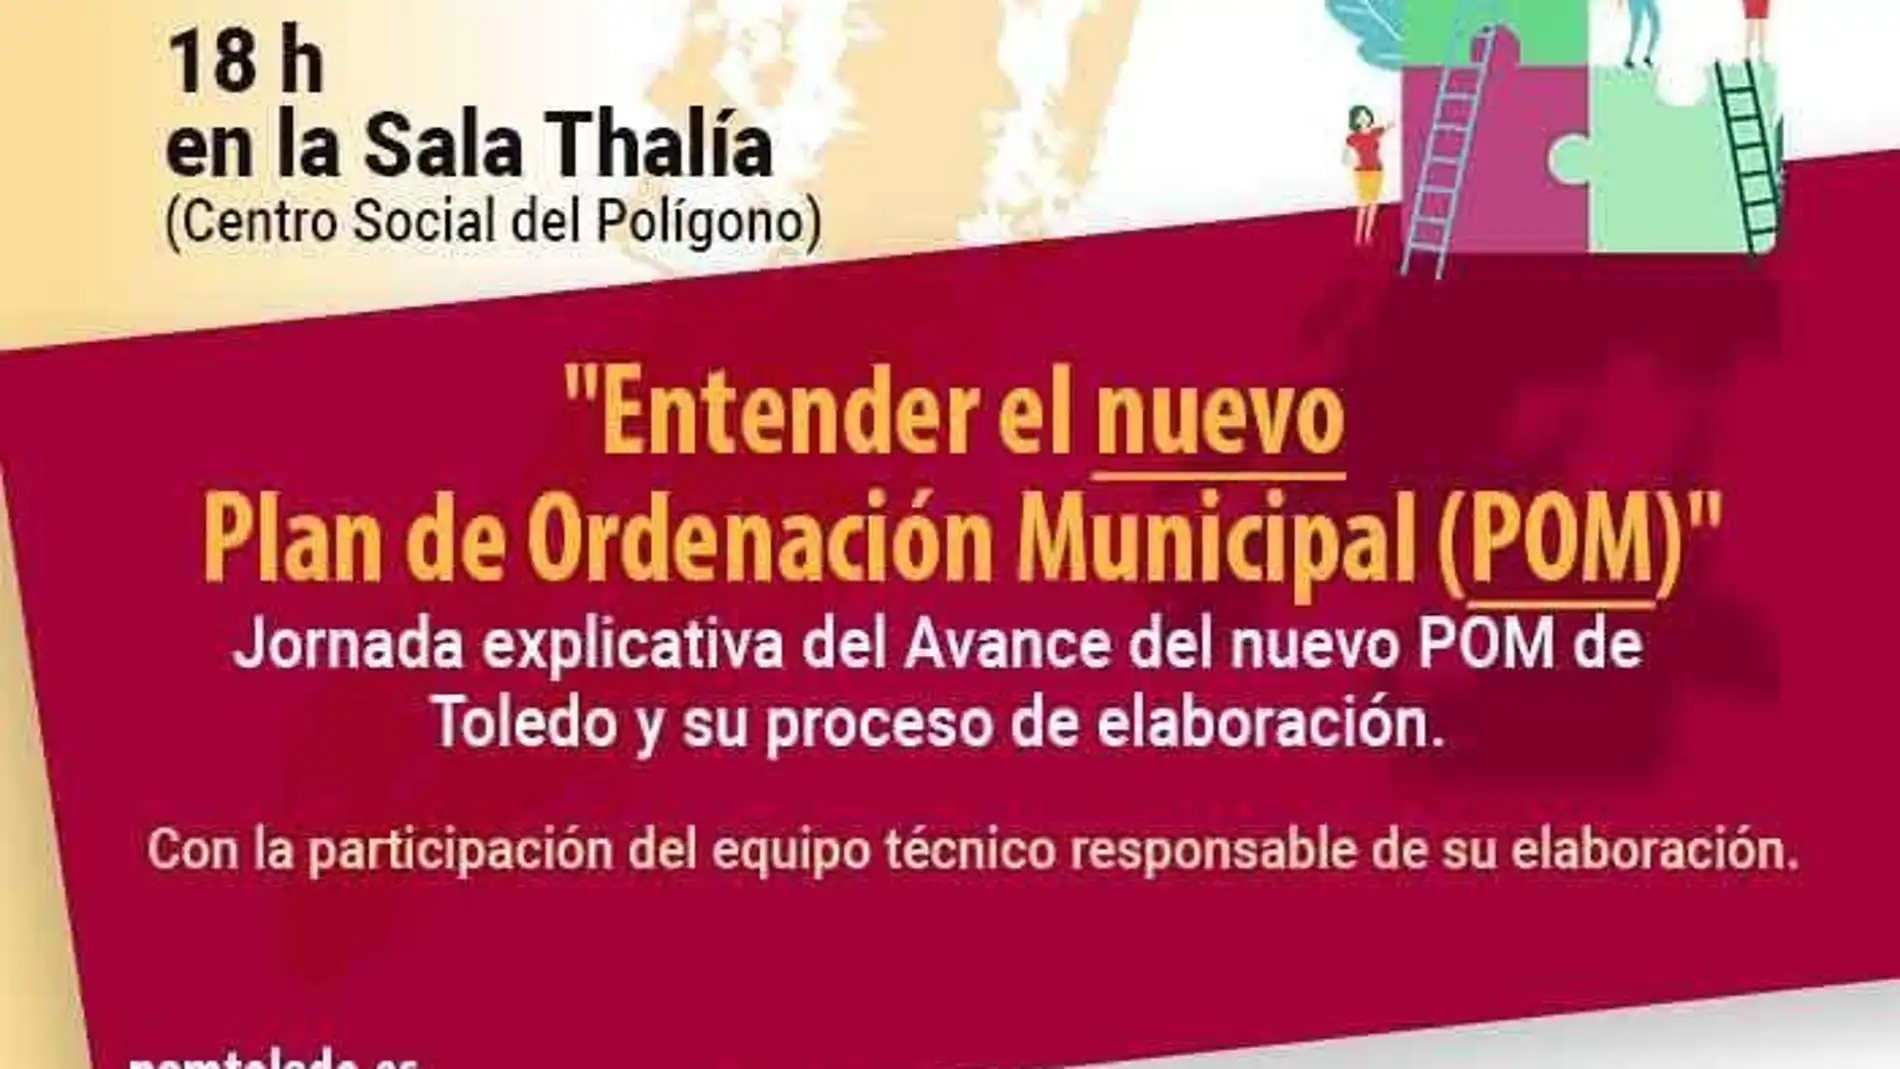 Toledo organiza este jueves un acto público sobre el POM, el Plan de Ordenación Municipal de la capital 